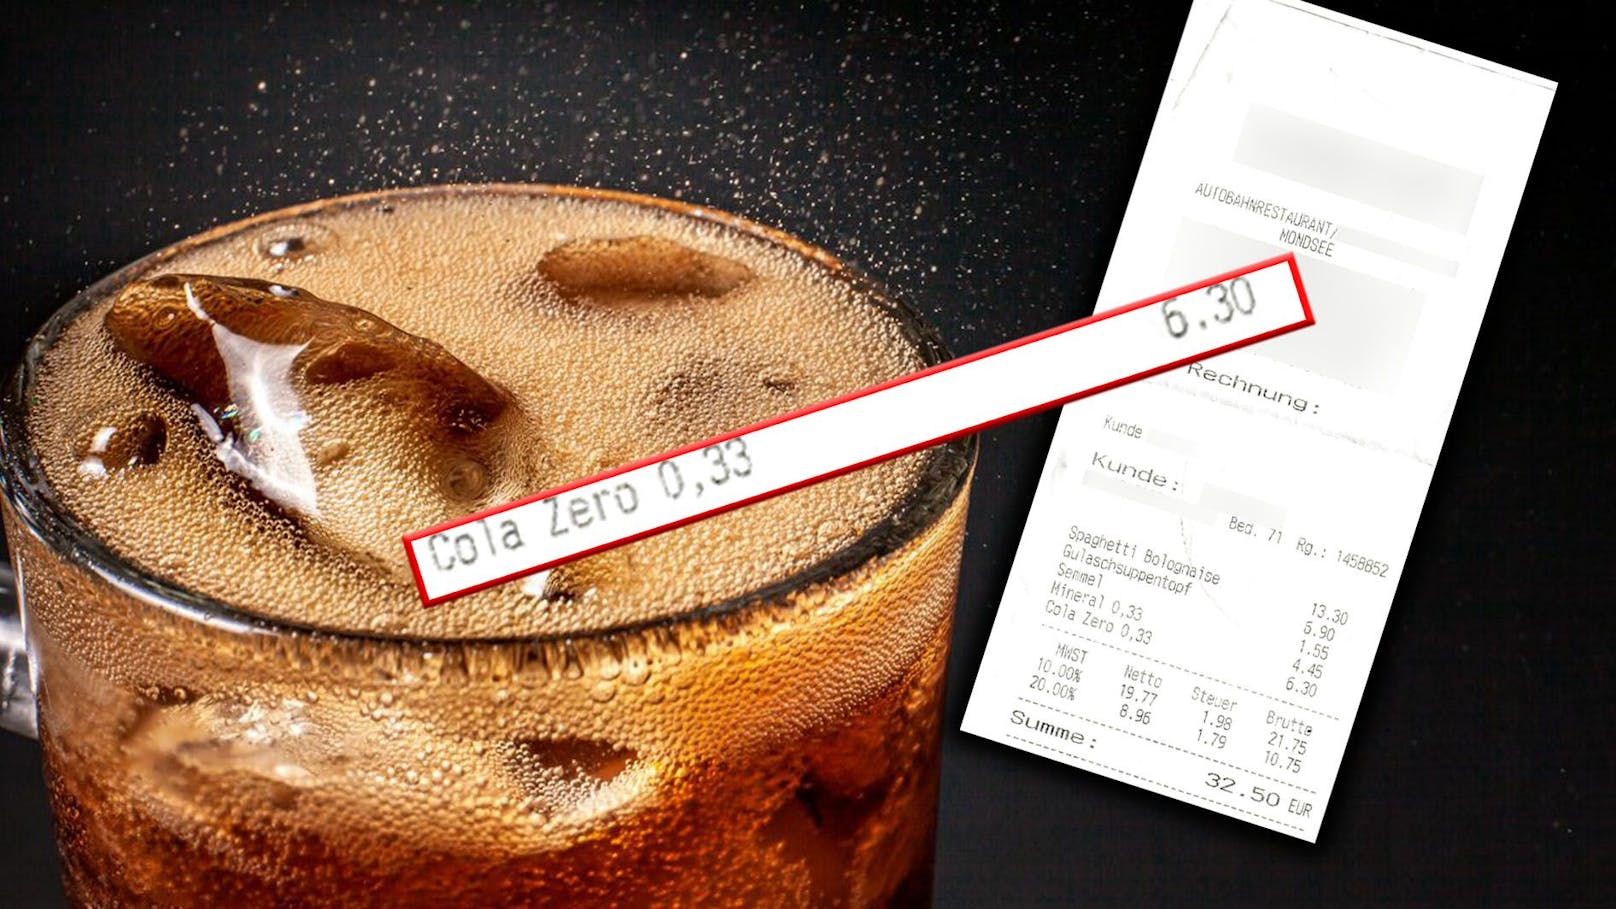 Preisschock: Wiener muss 6,30 € für kleine Cola blechen